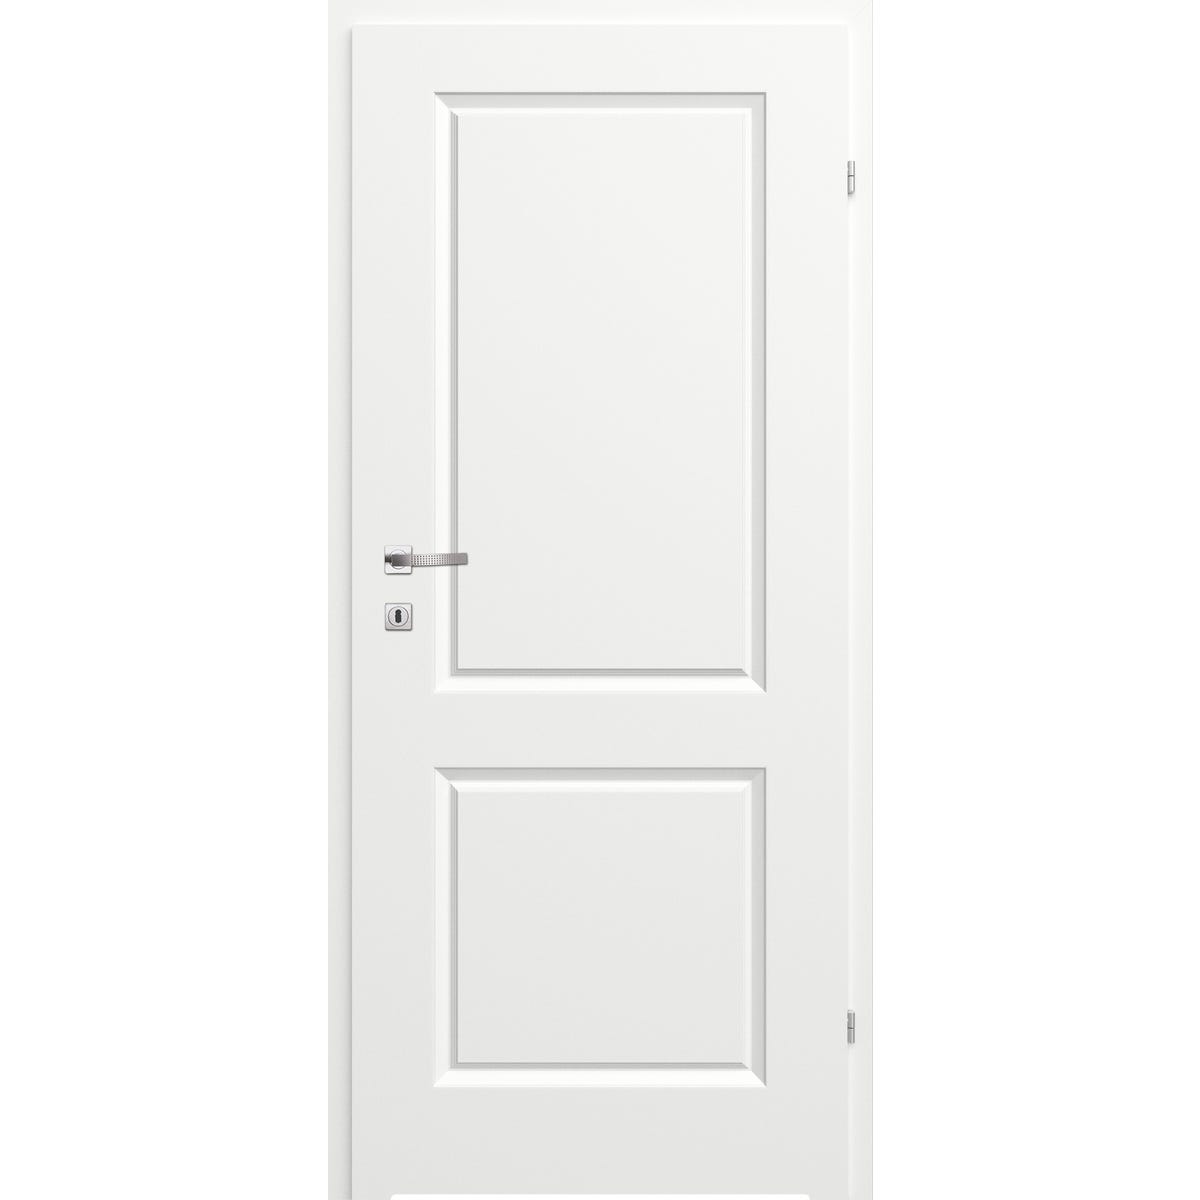 Zdjęcia - Drzwi wewnętrzne CLASSEN  łazienkowe pełne z podcięciem wentylacyjnym Morano II Bia 